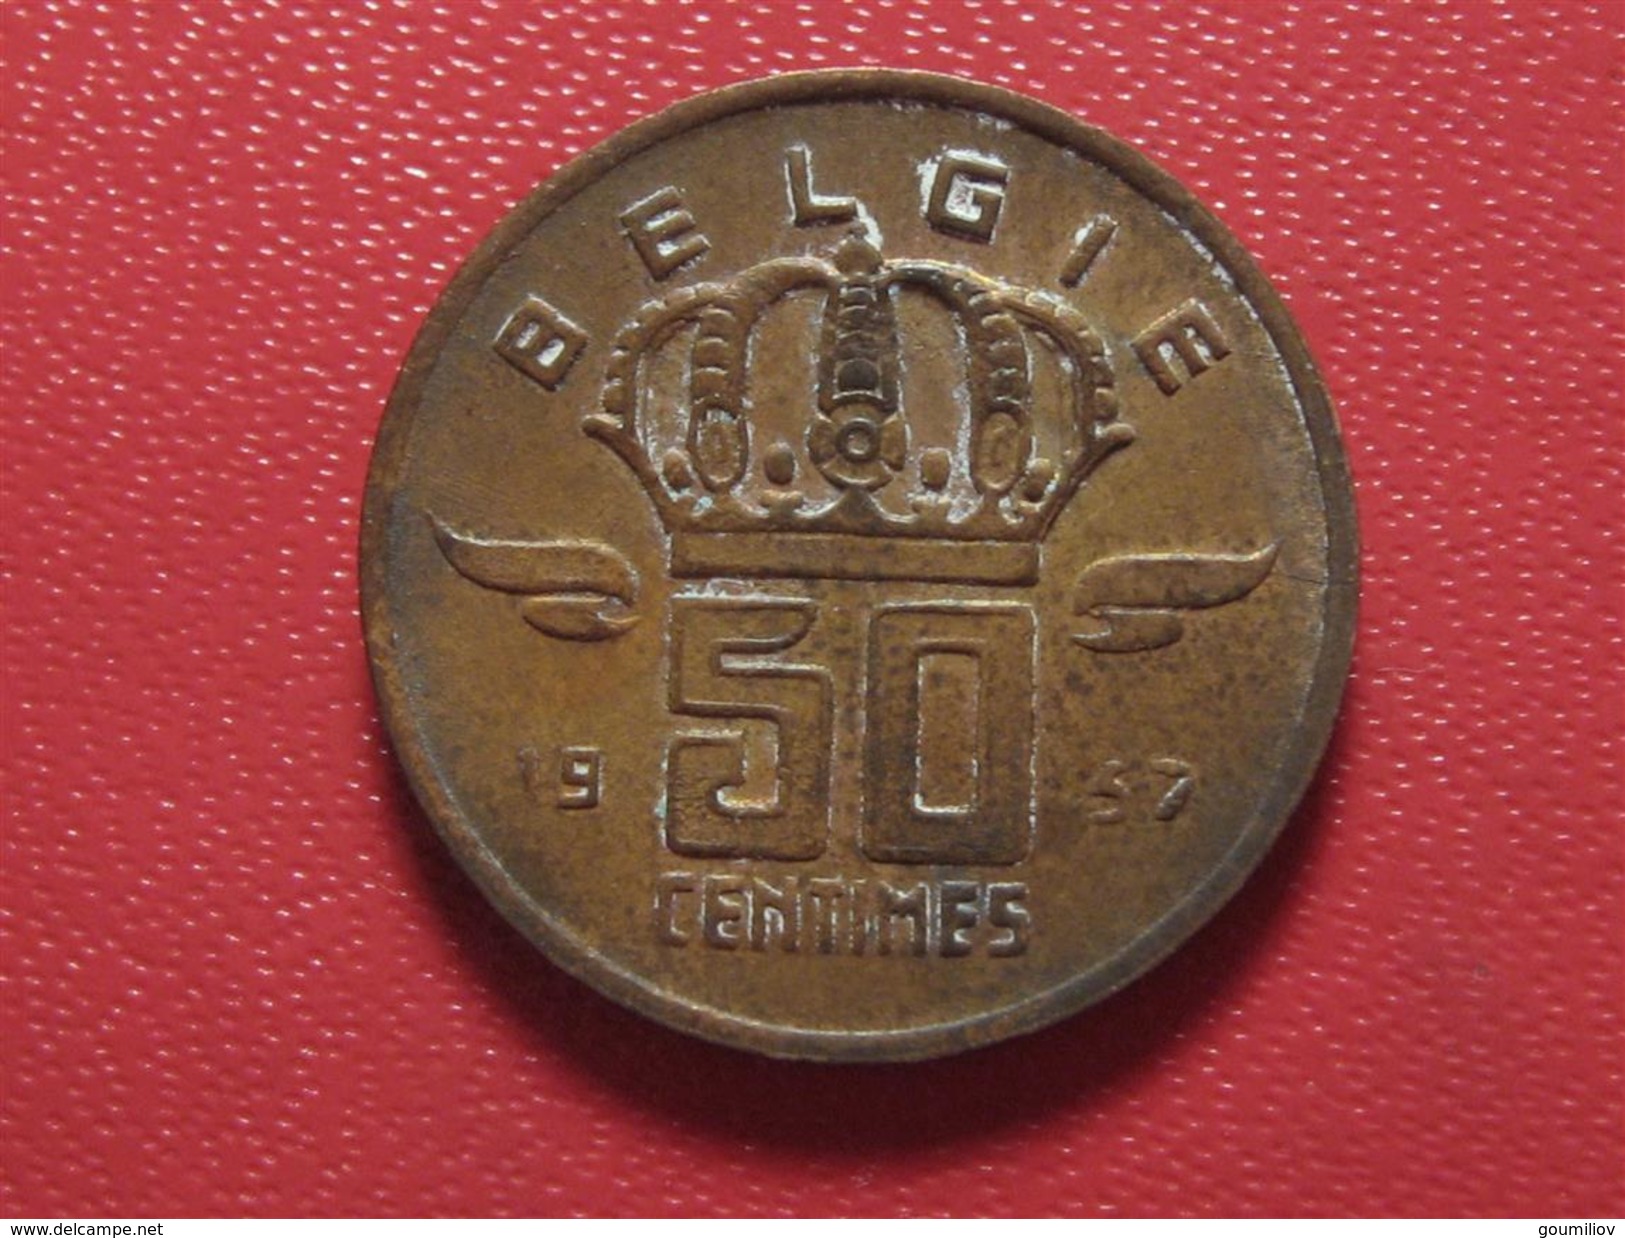 Belgique - 50 Centimes 1957 3795 - 50 Centimes